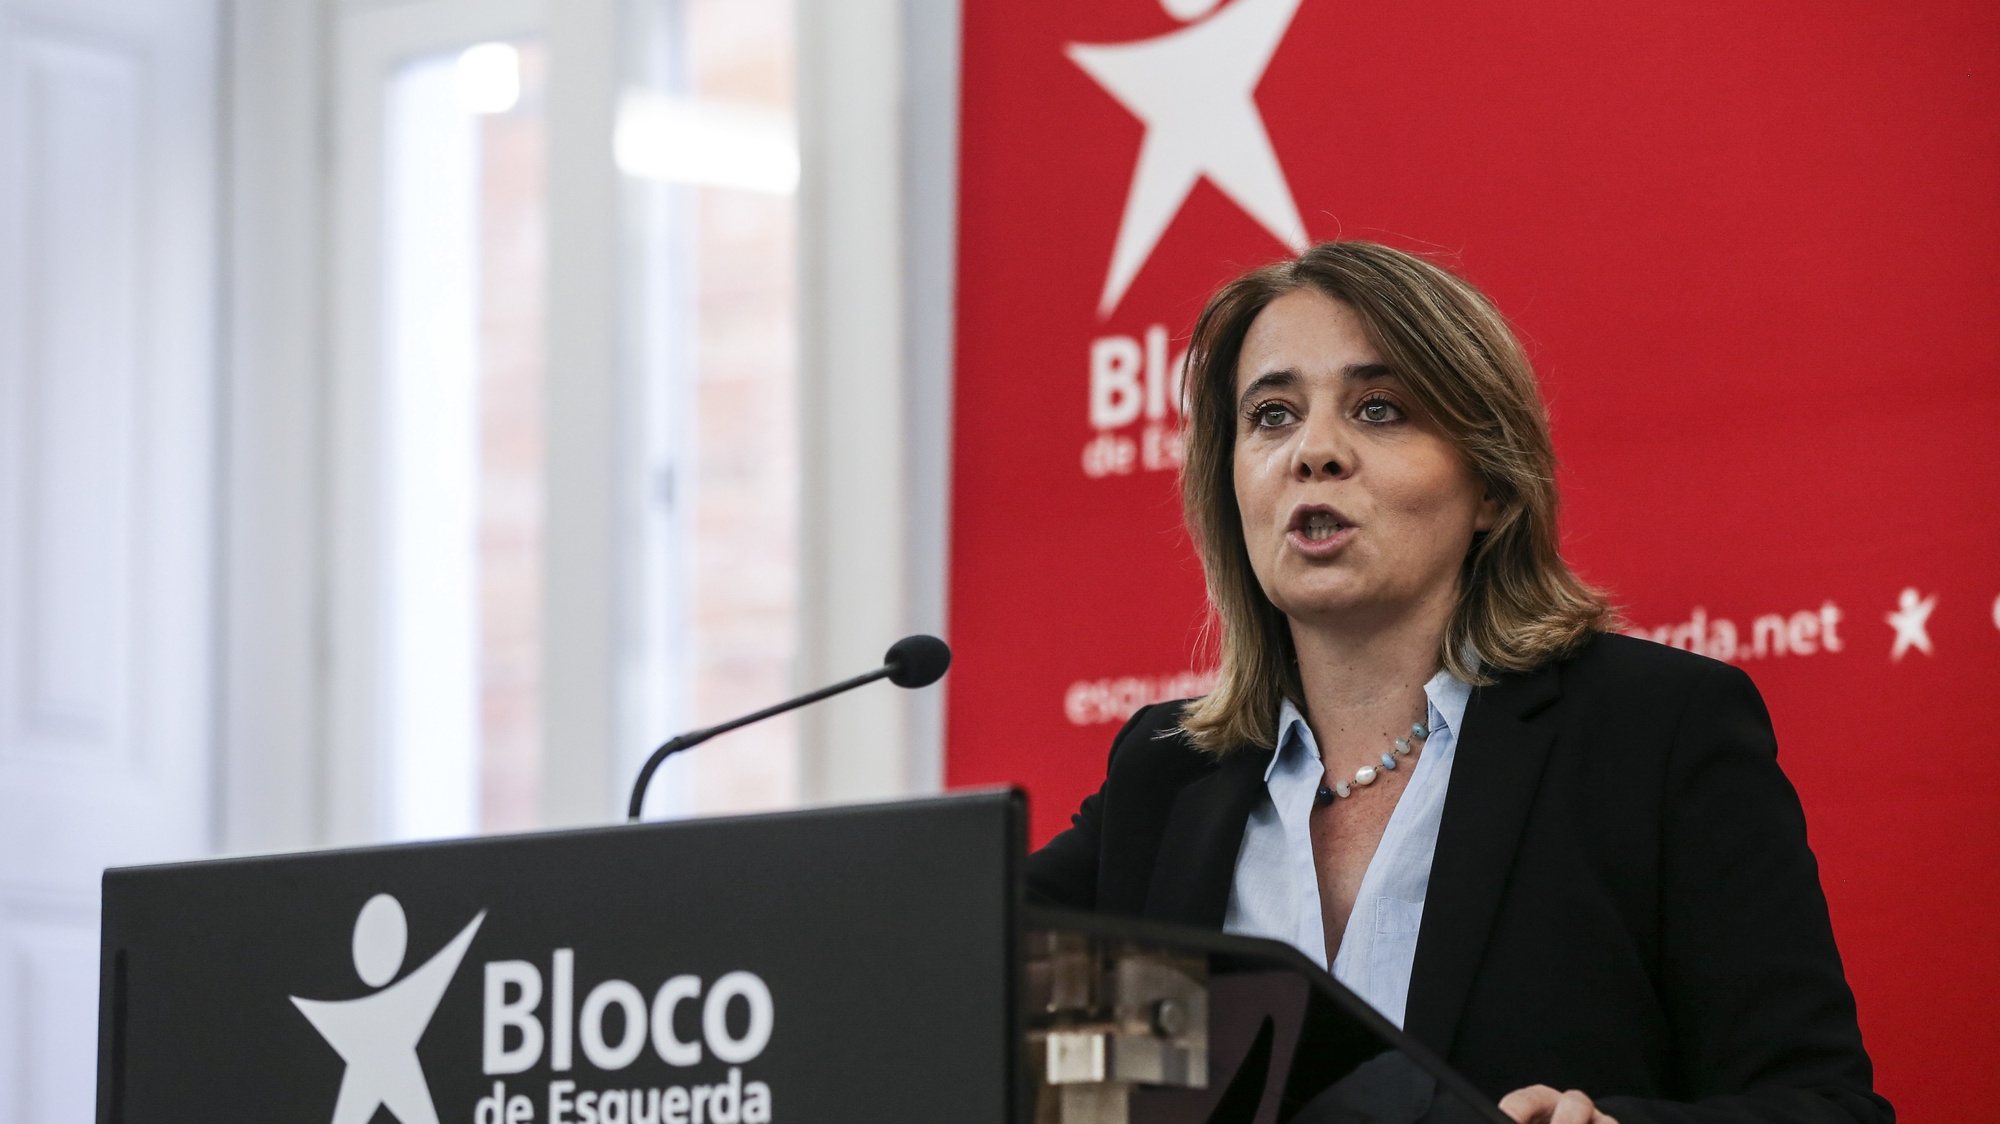 A coordenadora do Bloco de Esquerda (BE), Catarina Martins, fala aos jornalistas durante uma conferência de imprensa sobre as conclusões para o Orçamento do Estado para 2022, na sede nacional do partido, Lisboa, 24 de outubro de 2021. MANUEL DE ALMEIDA / LUSA